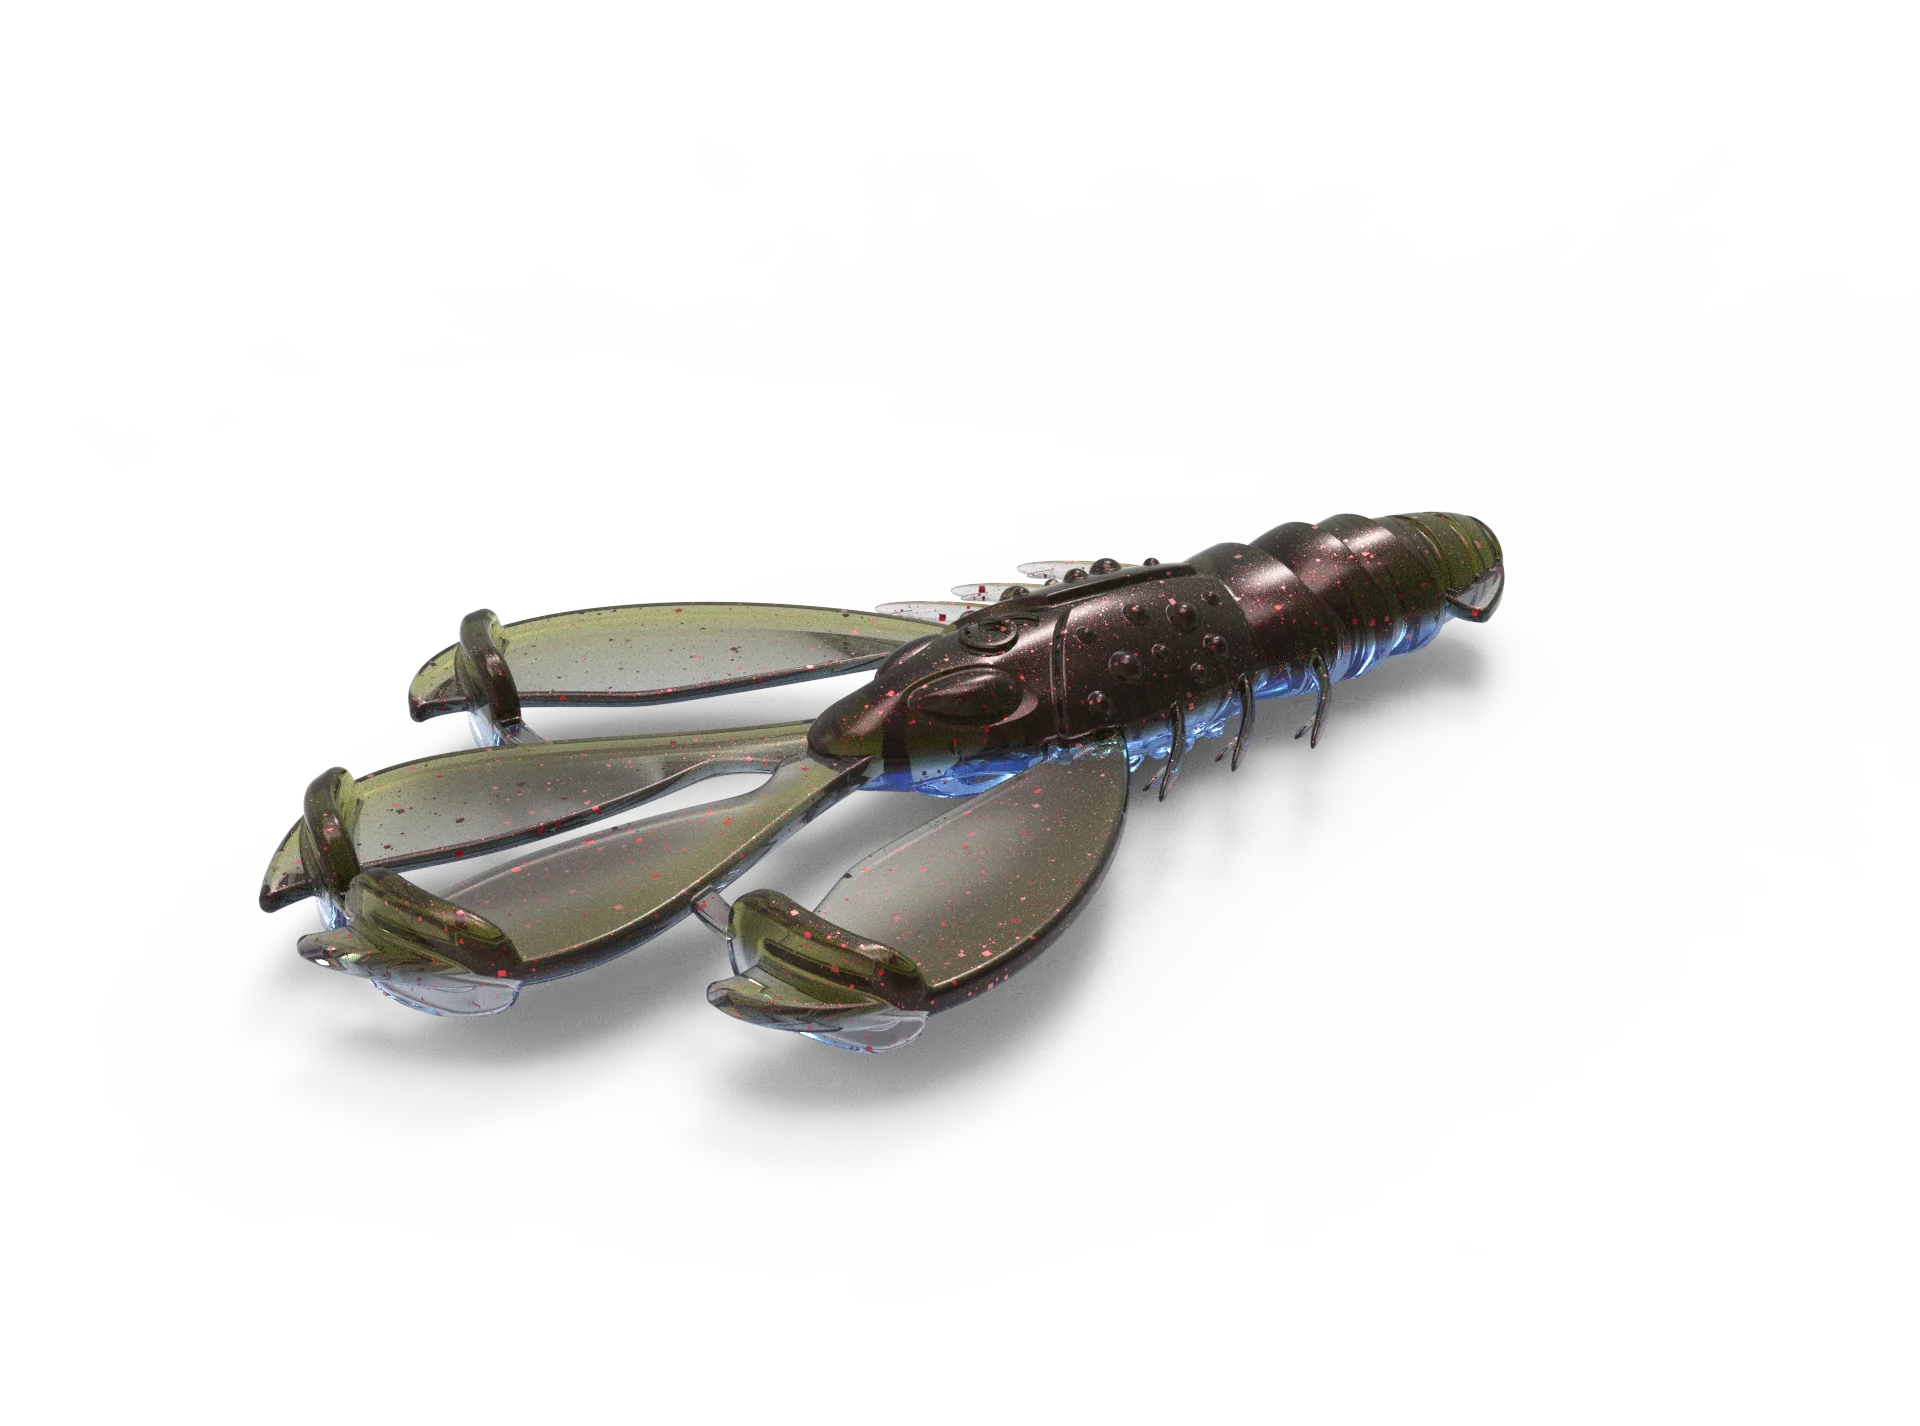 Buy molting-crawfish 6TH SENSE CONGO CRAW 3.8